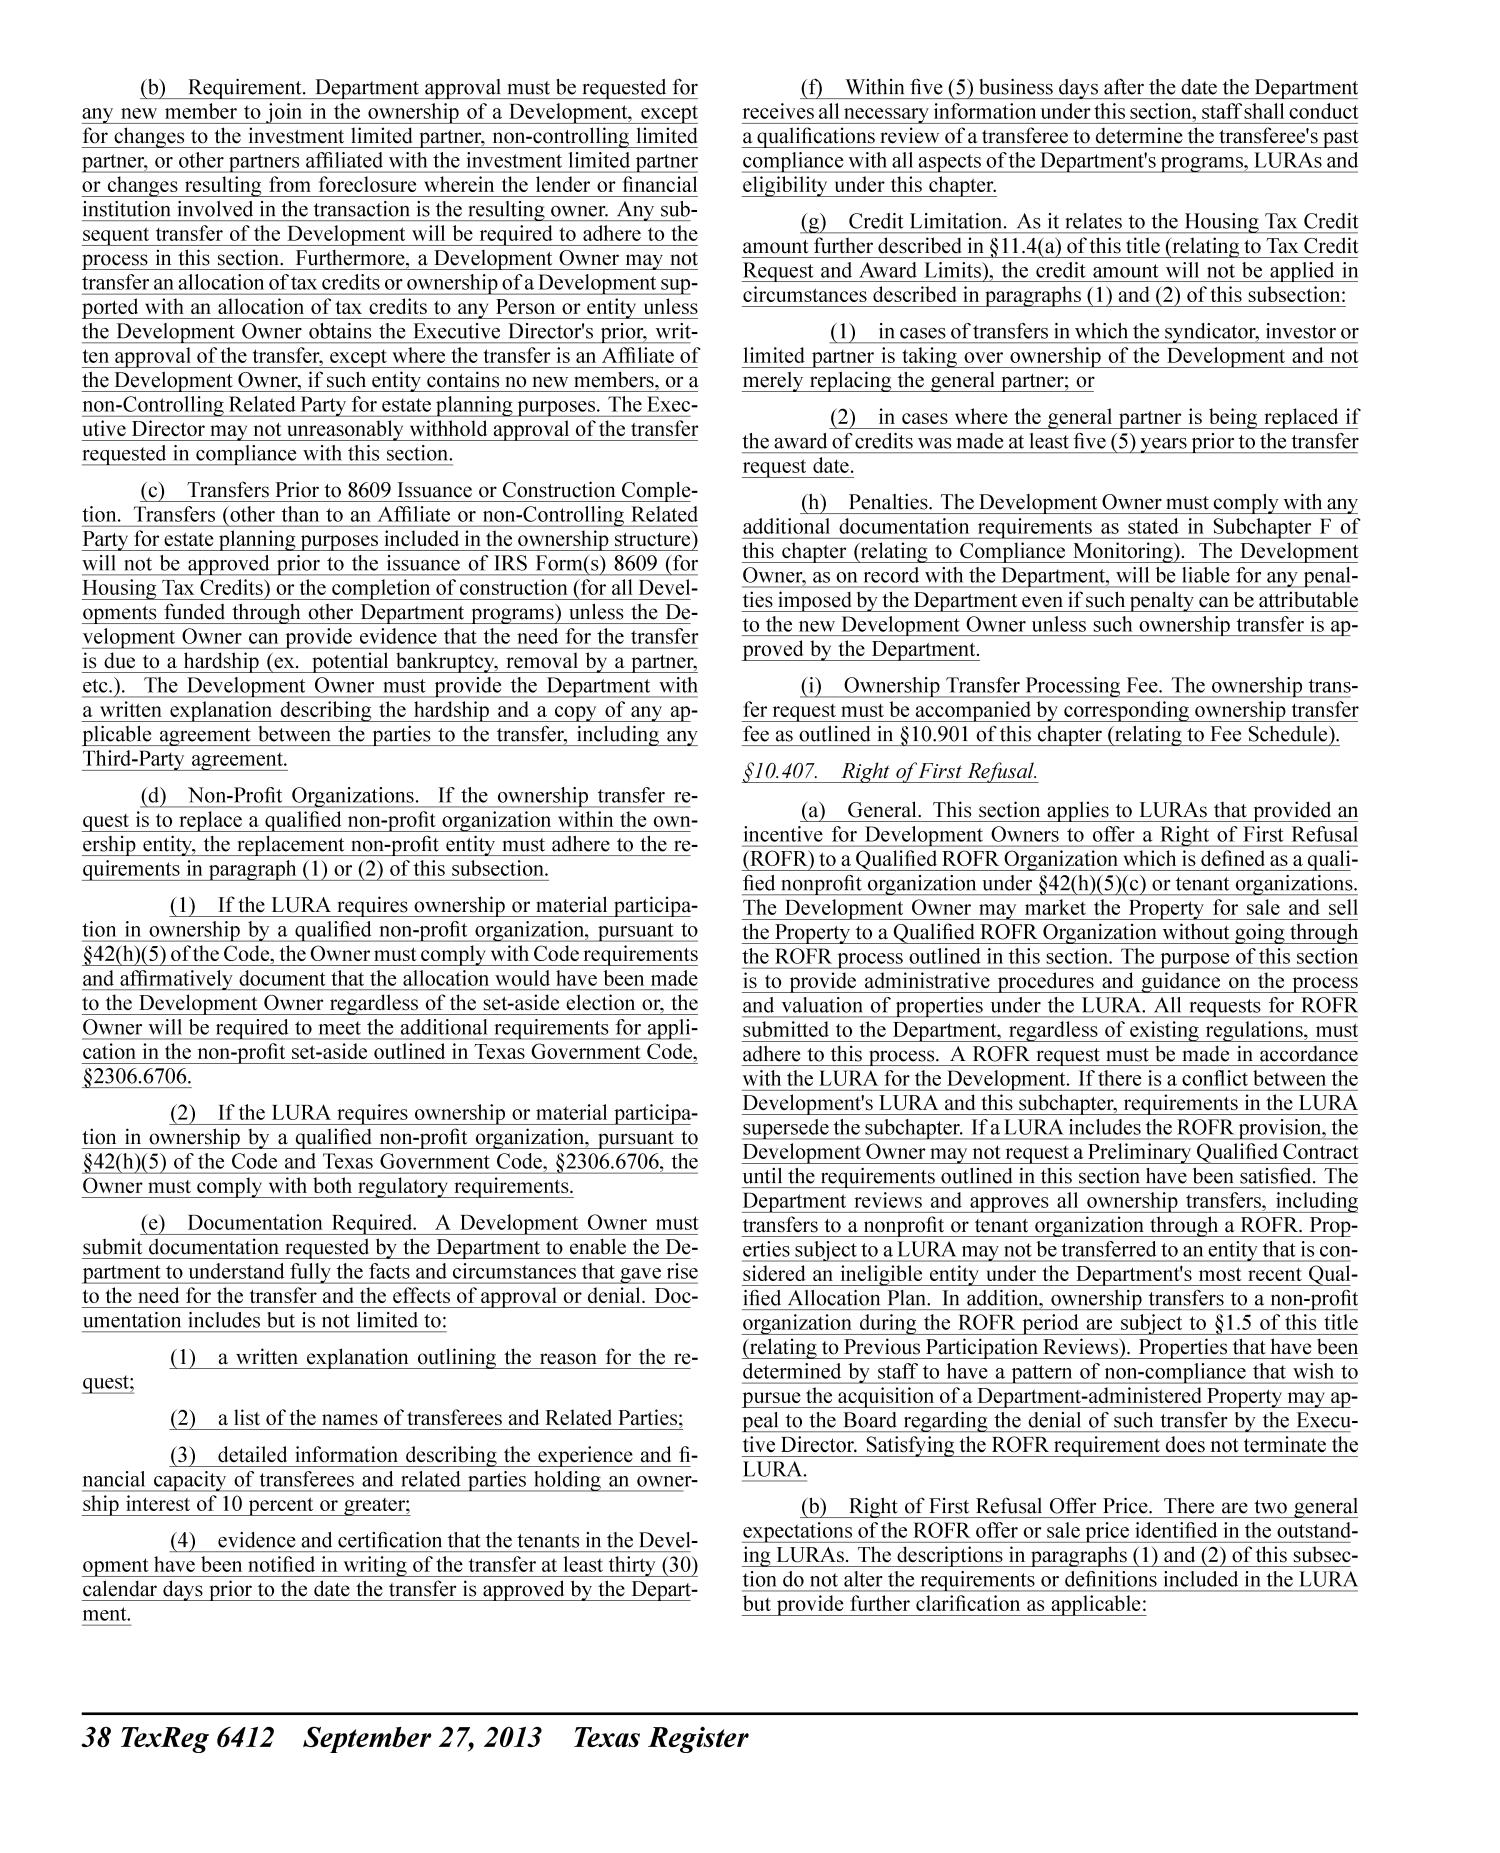 Texas Register, Volume 38, Number 39, Pages 6341-6746, September 27, 2013
                                                
                                                    6412
                                                